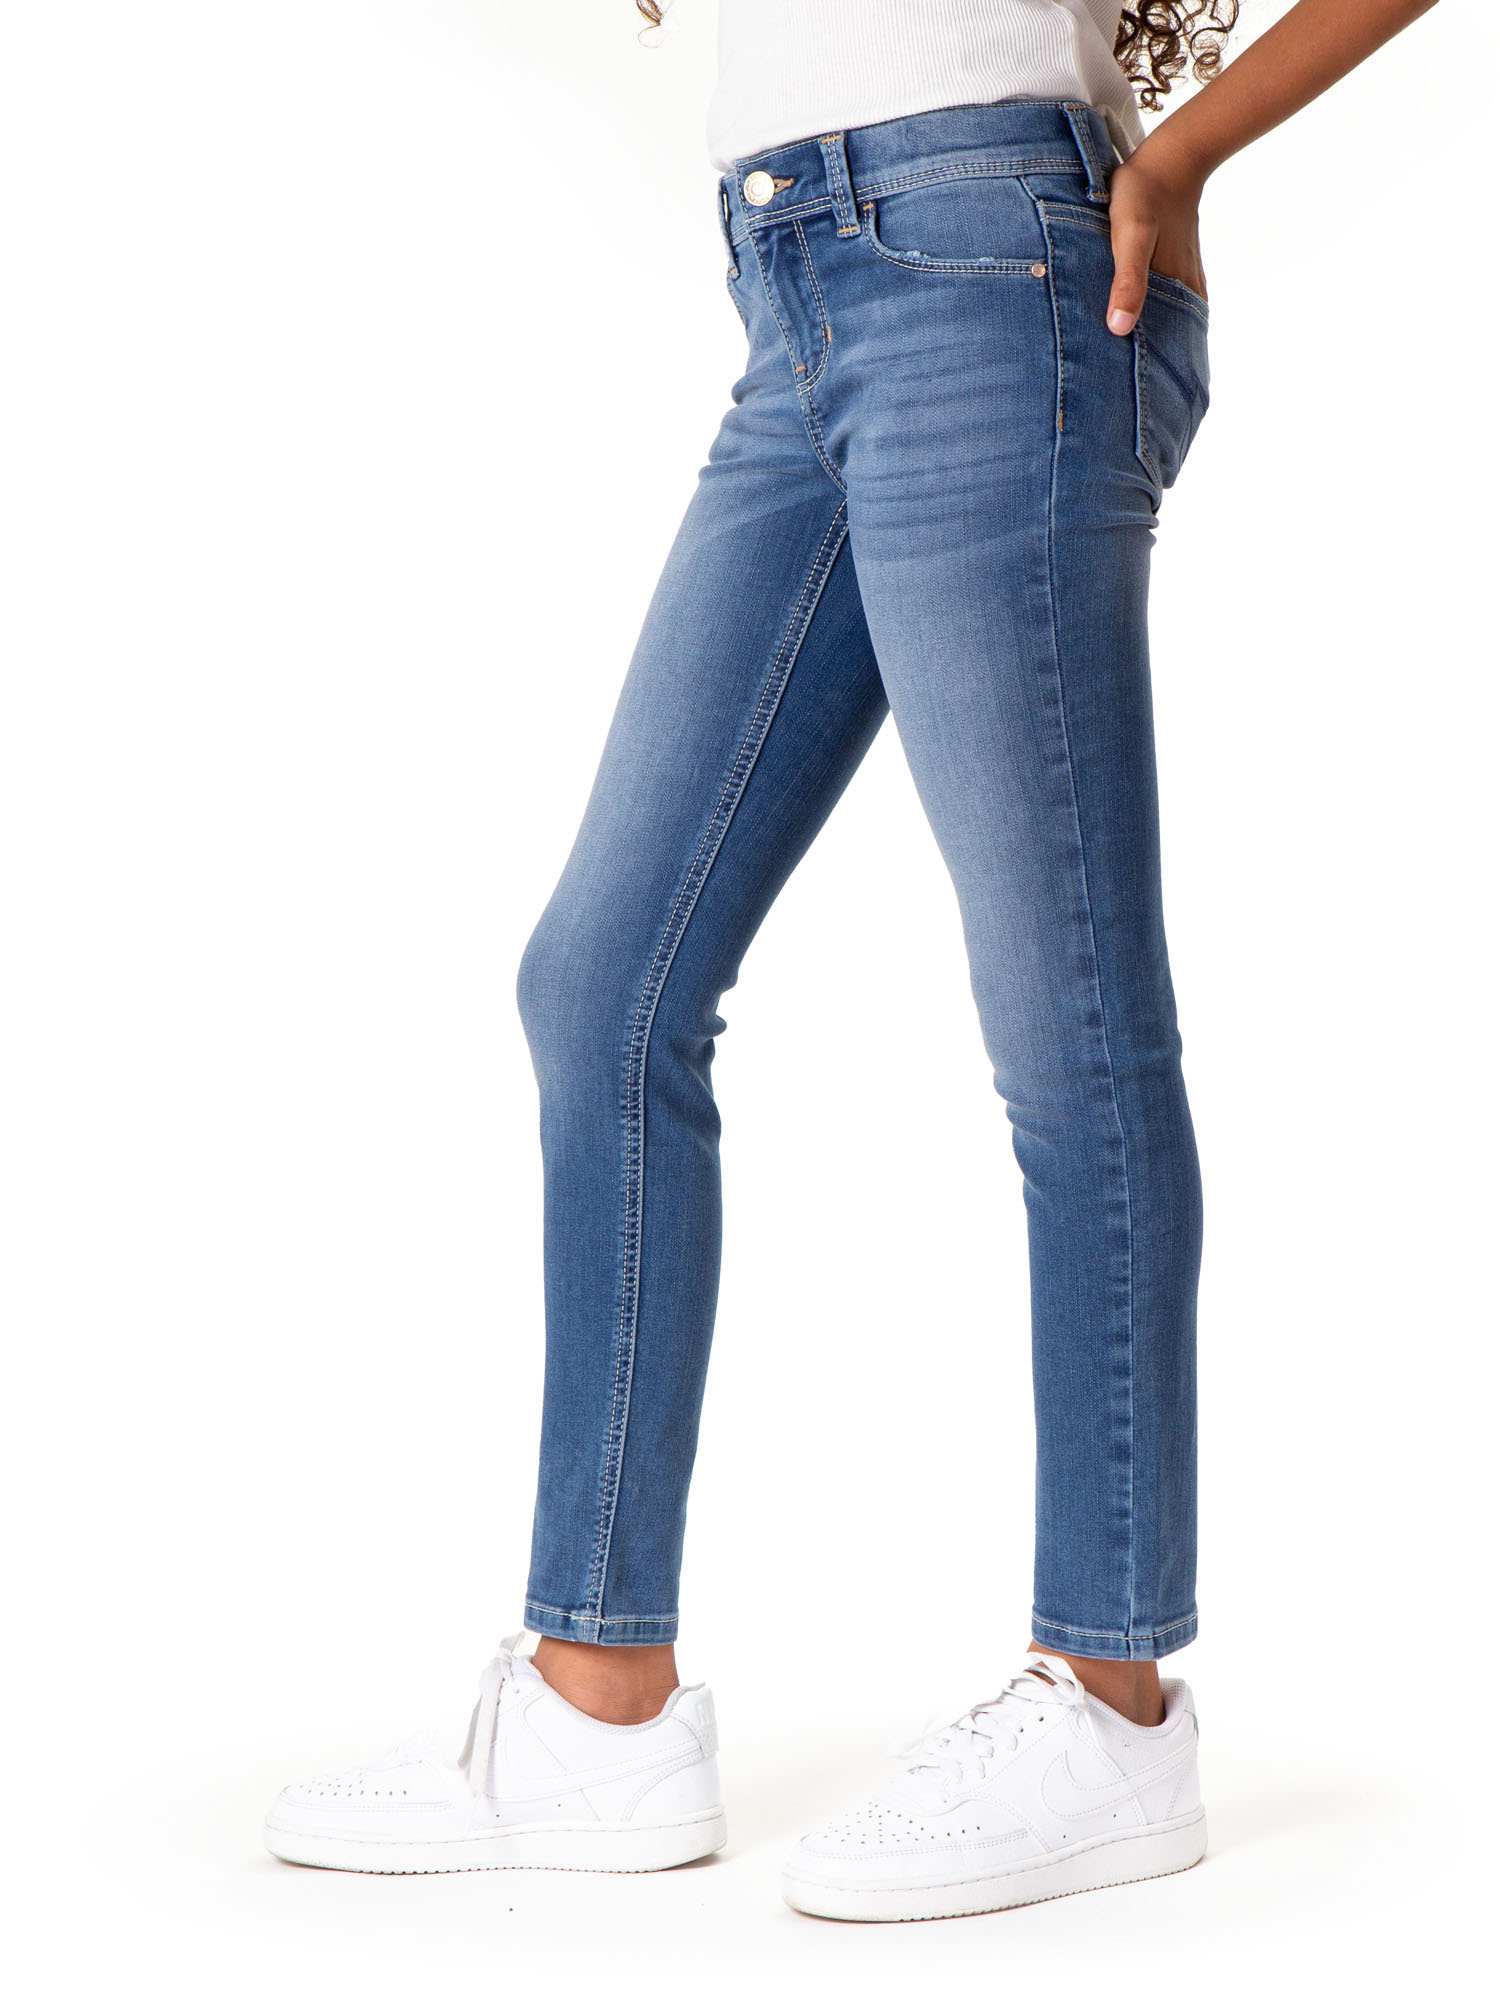 Jordache Girls Skinny Jeans, Slim Sizes 5-18 - Walmart.com